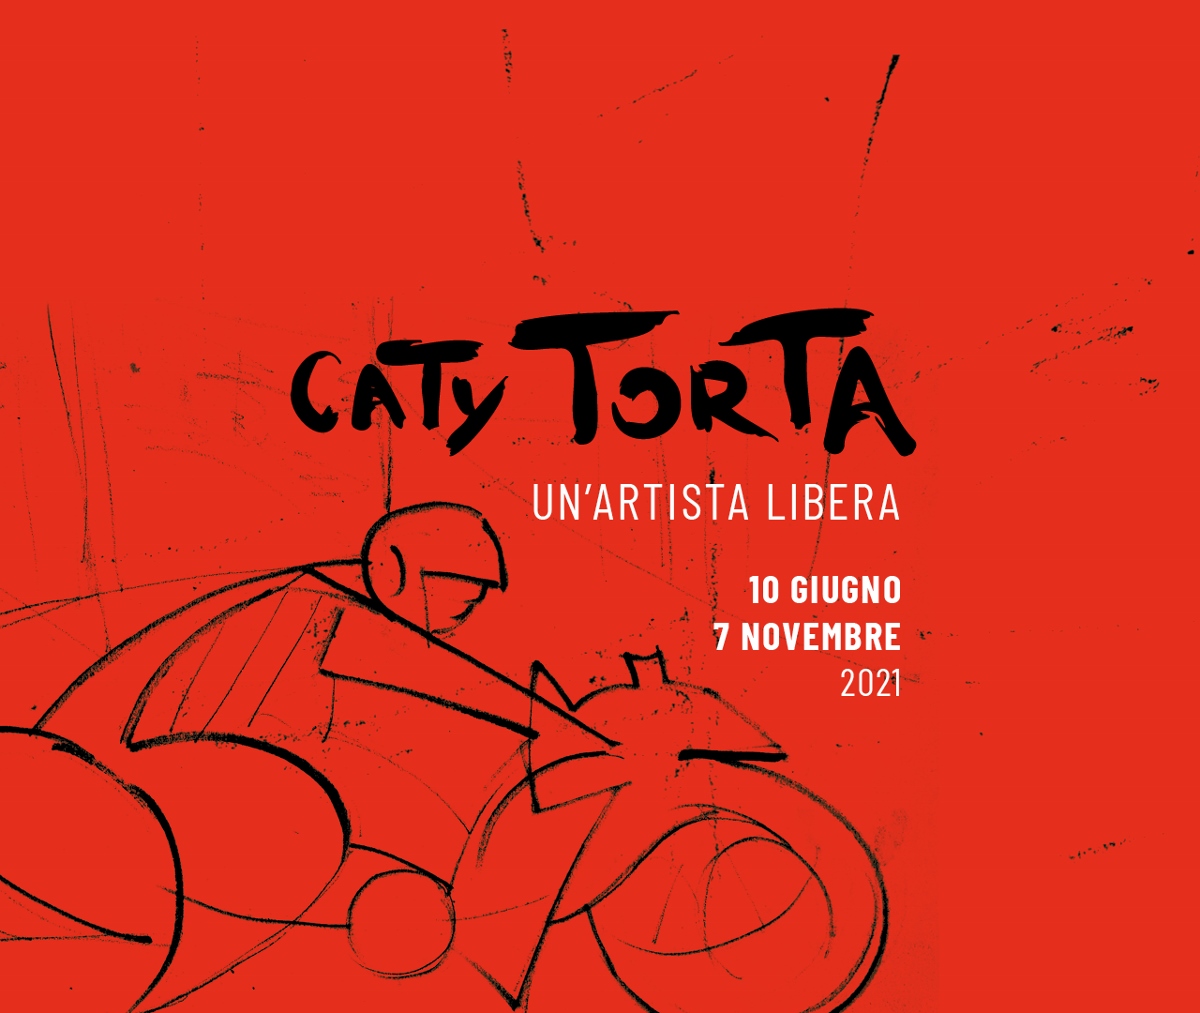 Caty Torta - Un'artista libera